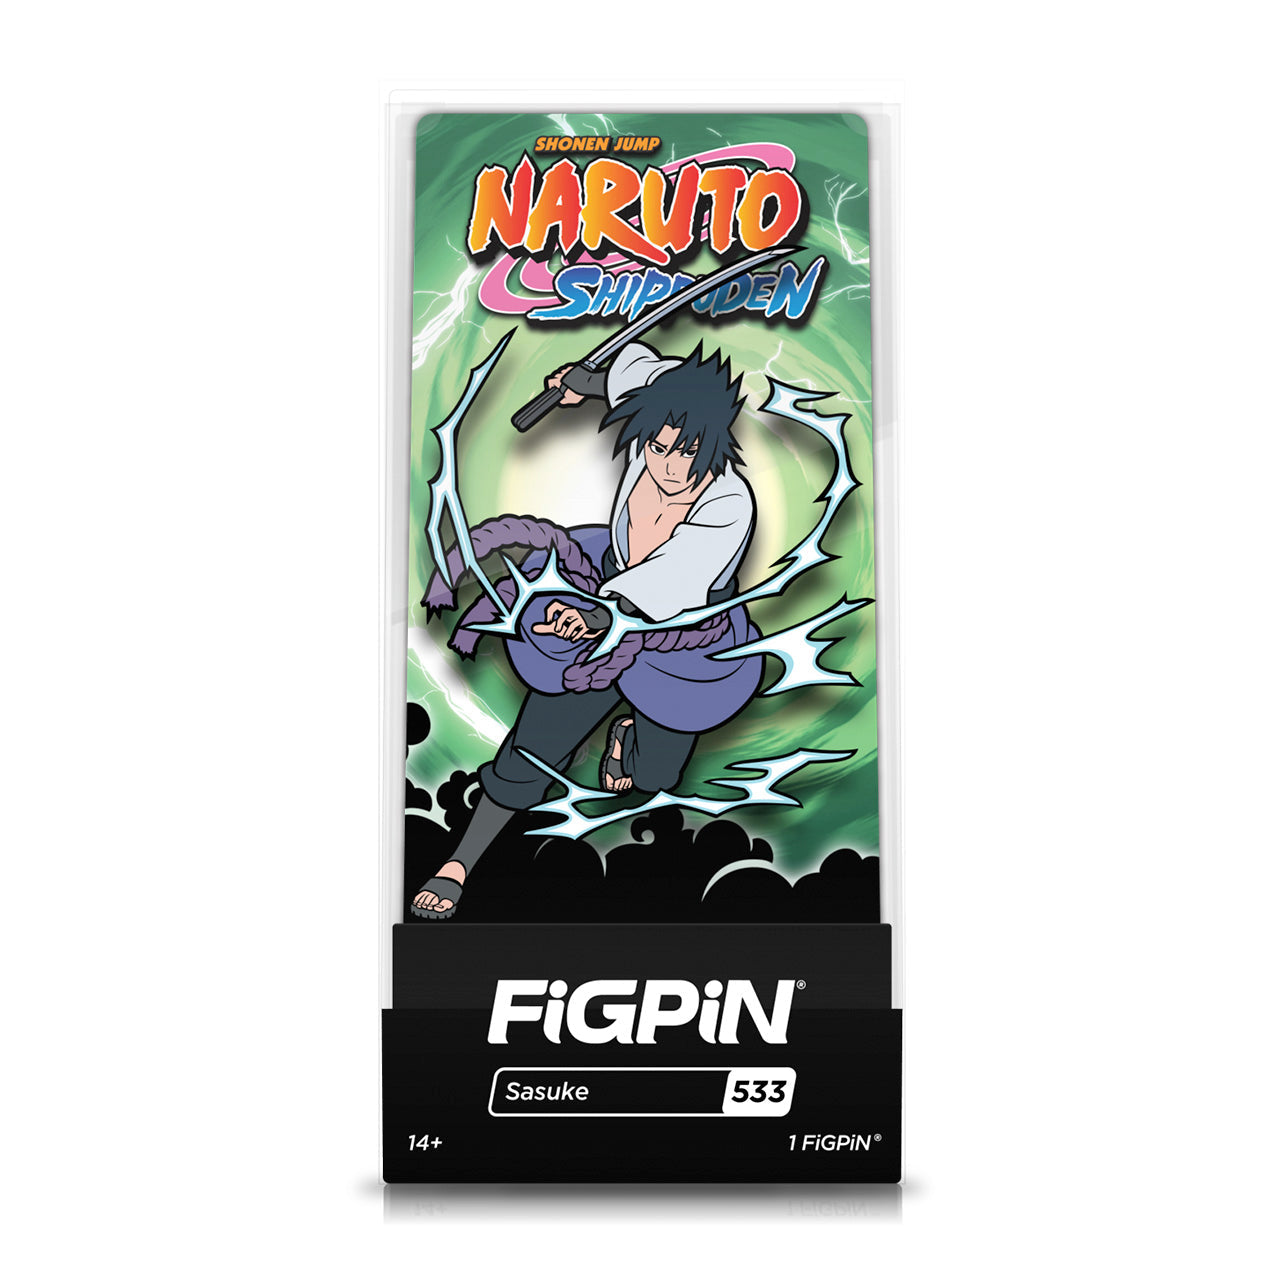 Naruto - Sasuke (#533) FiGPiN image count 1